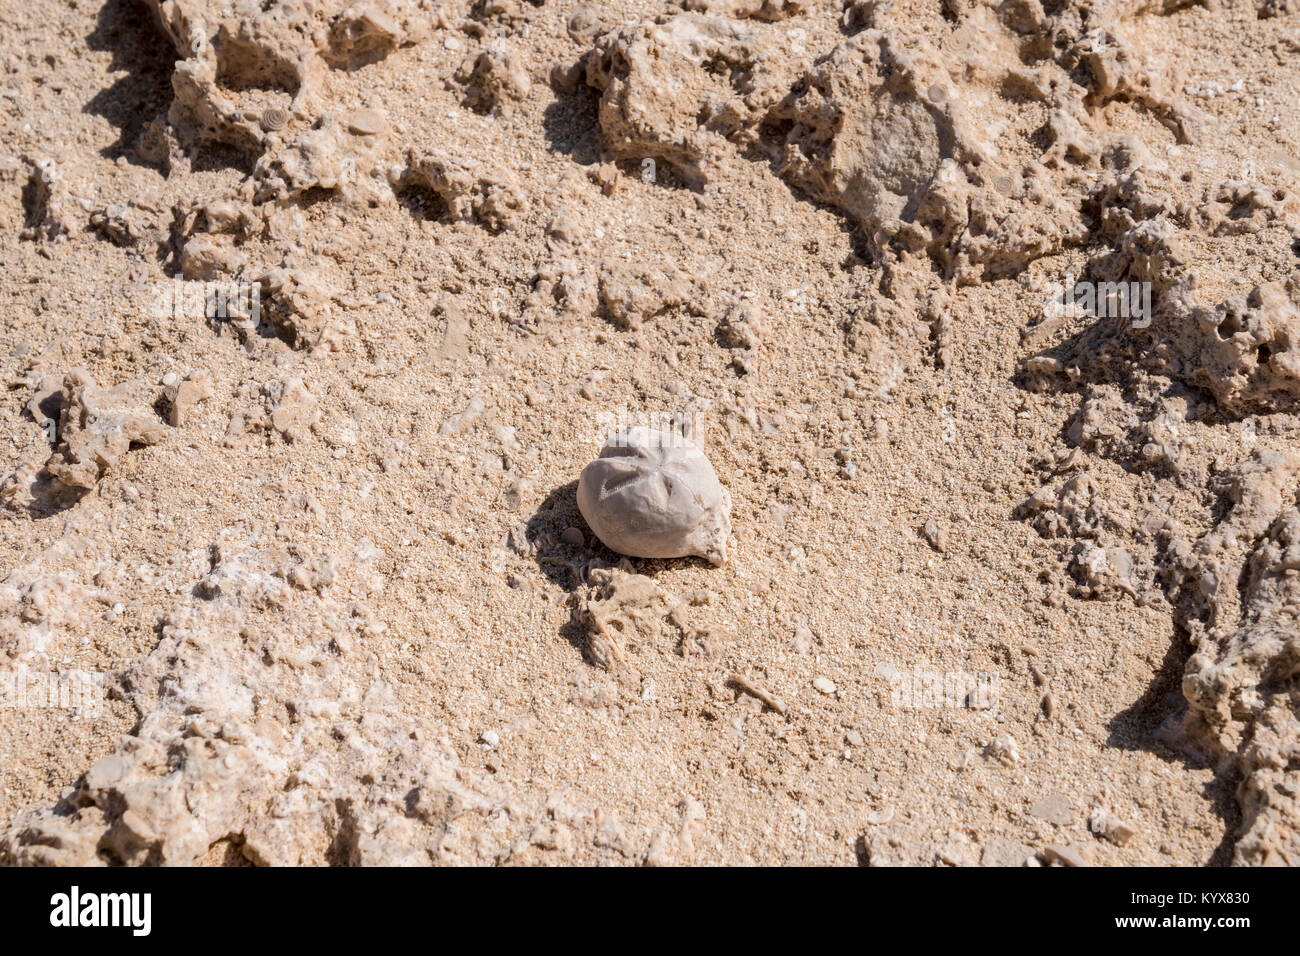 Seeigel fossilen bei Rock Garden (Rock Zoo von duqm oder duqm Stone Park), einer berühmten Touristenattraktion, der ein 3 Quadratkilometer, Duqm, Oman gefunden Stockfoto